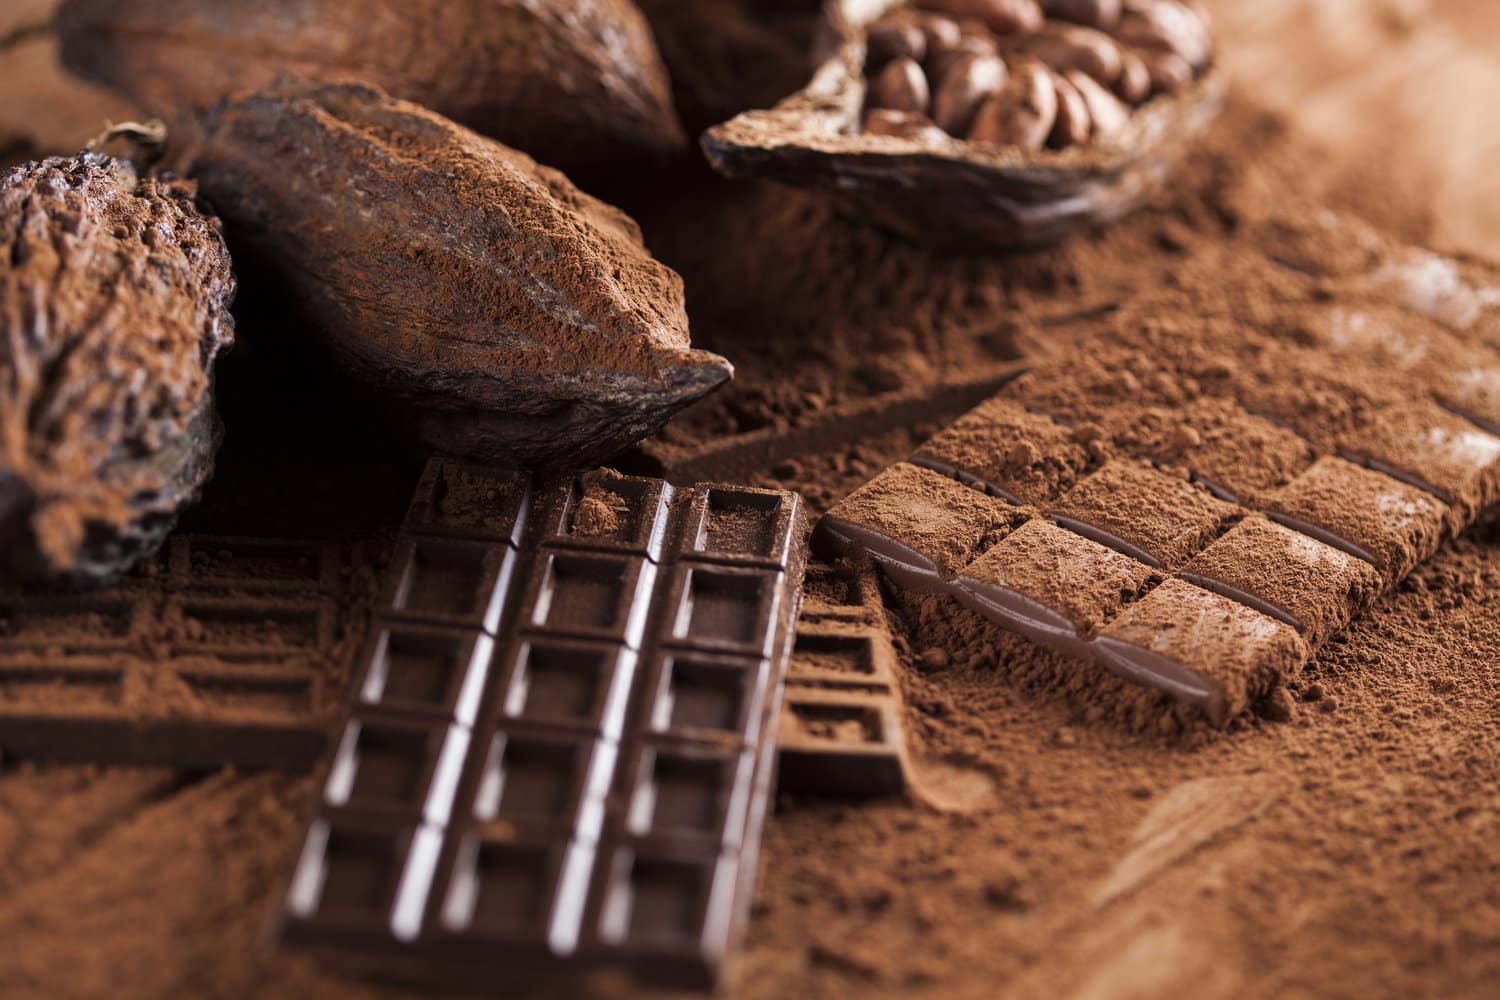 Bienfaits du chocolat : le cacao joue-t-il vraiment sur votre humeur ? -  Blog